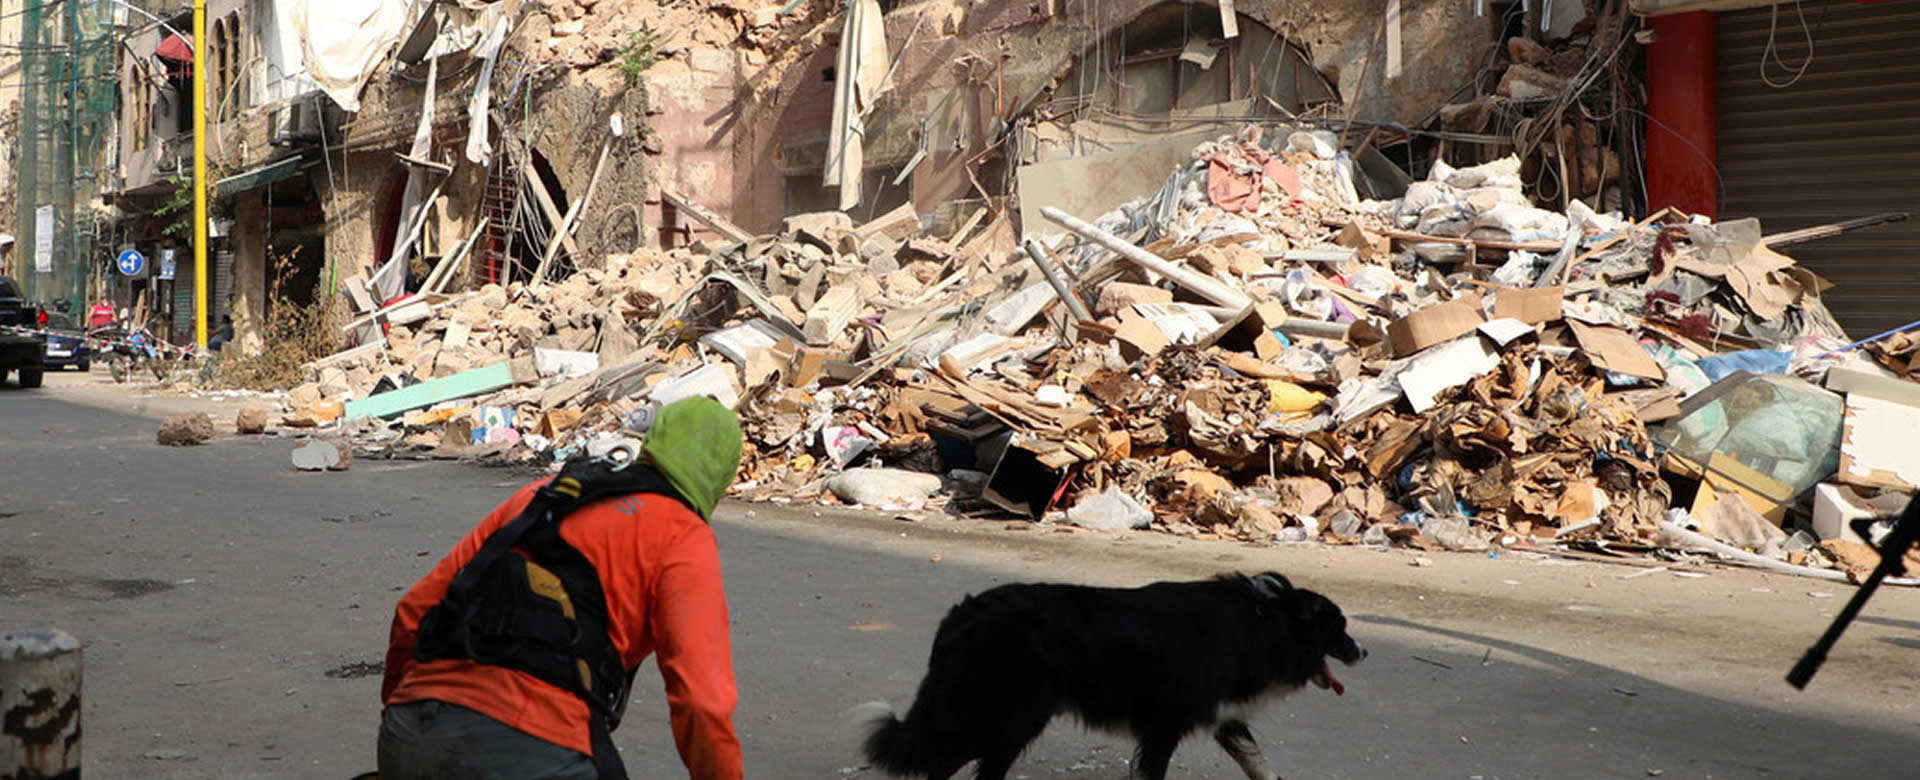 Equipos de búsqueda detectan signos de vida bajo escombros en Beirut